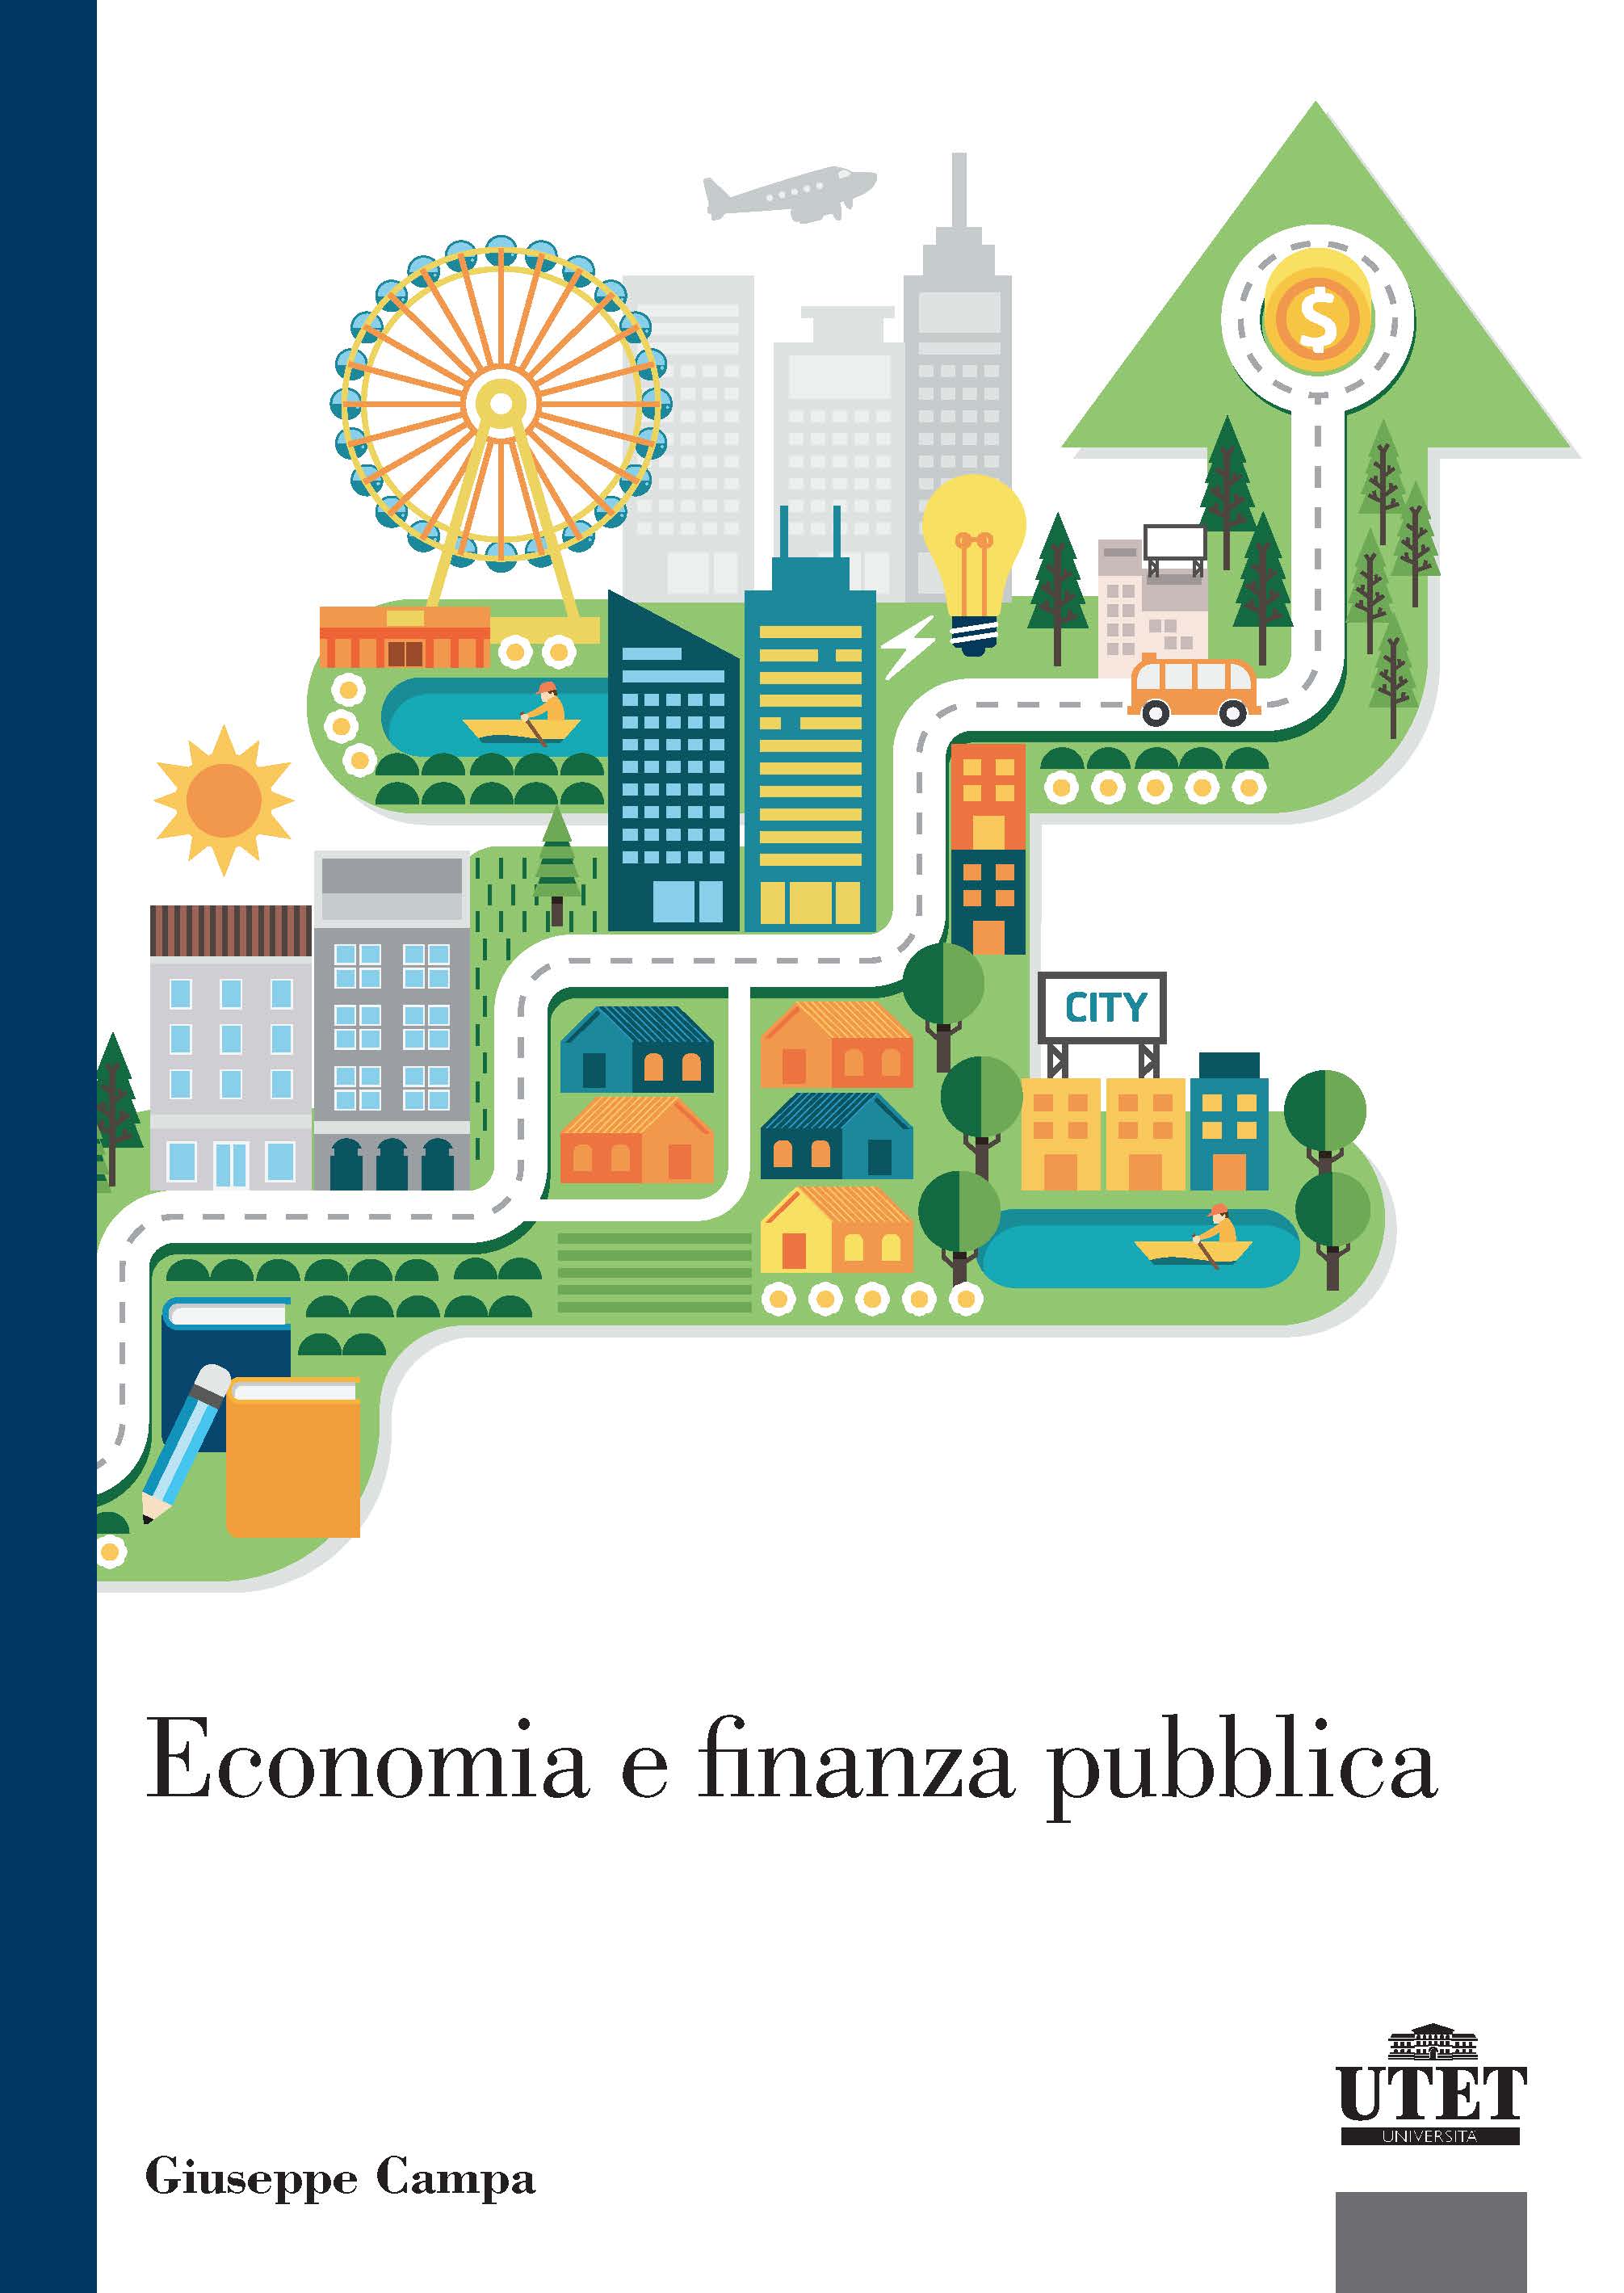 Economia e finanza pubblica